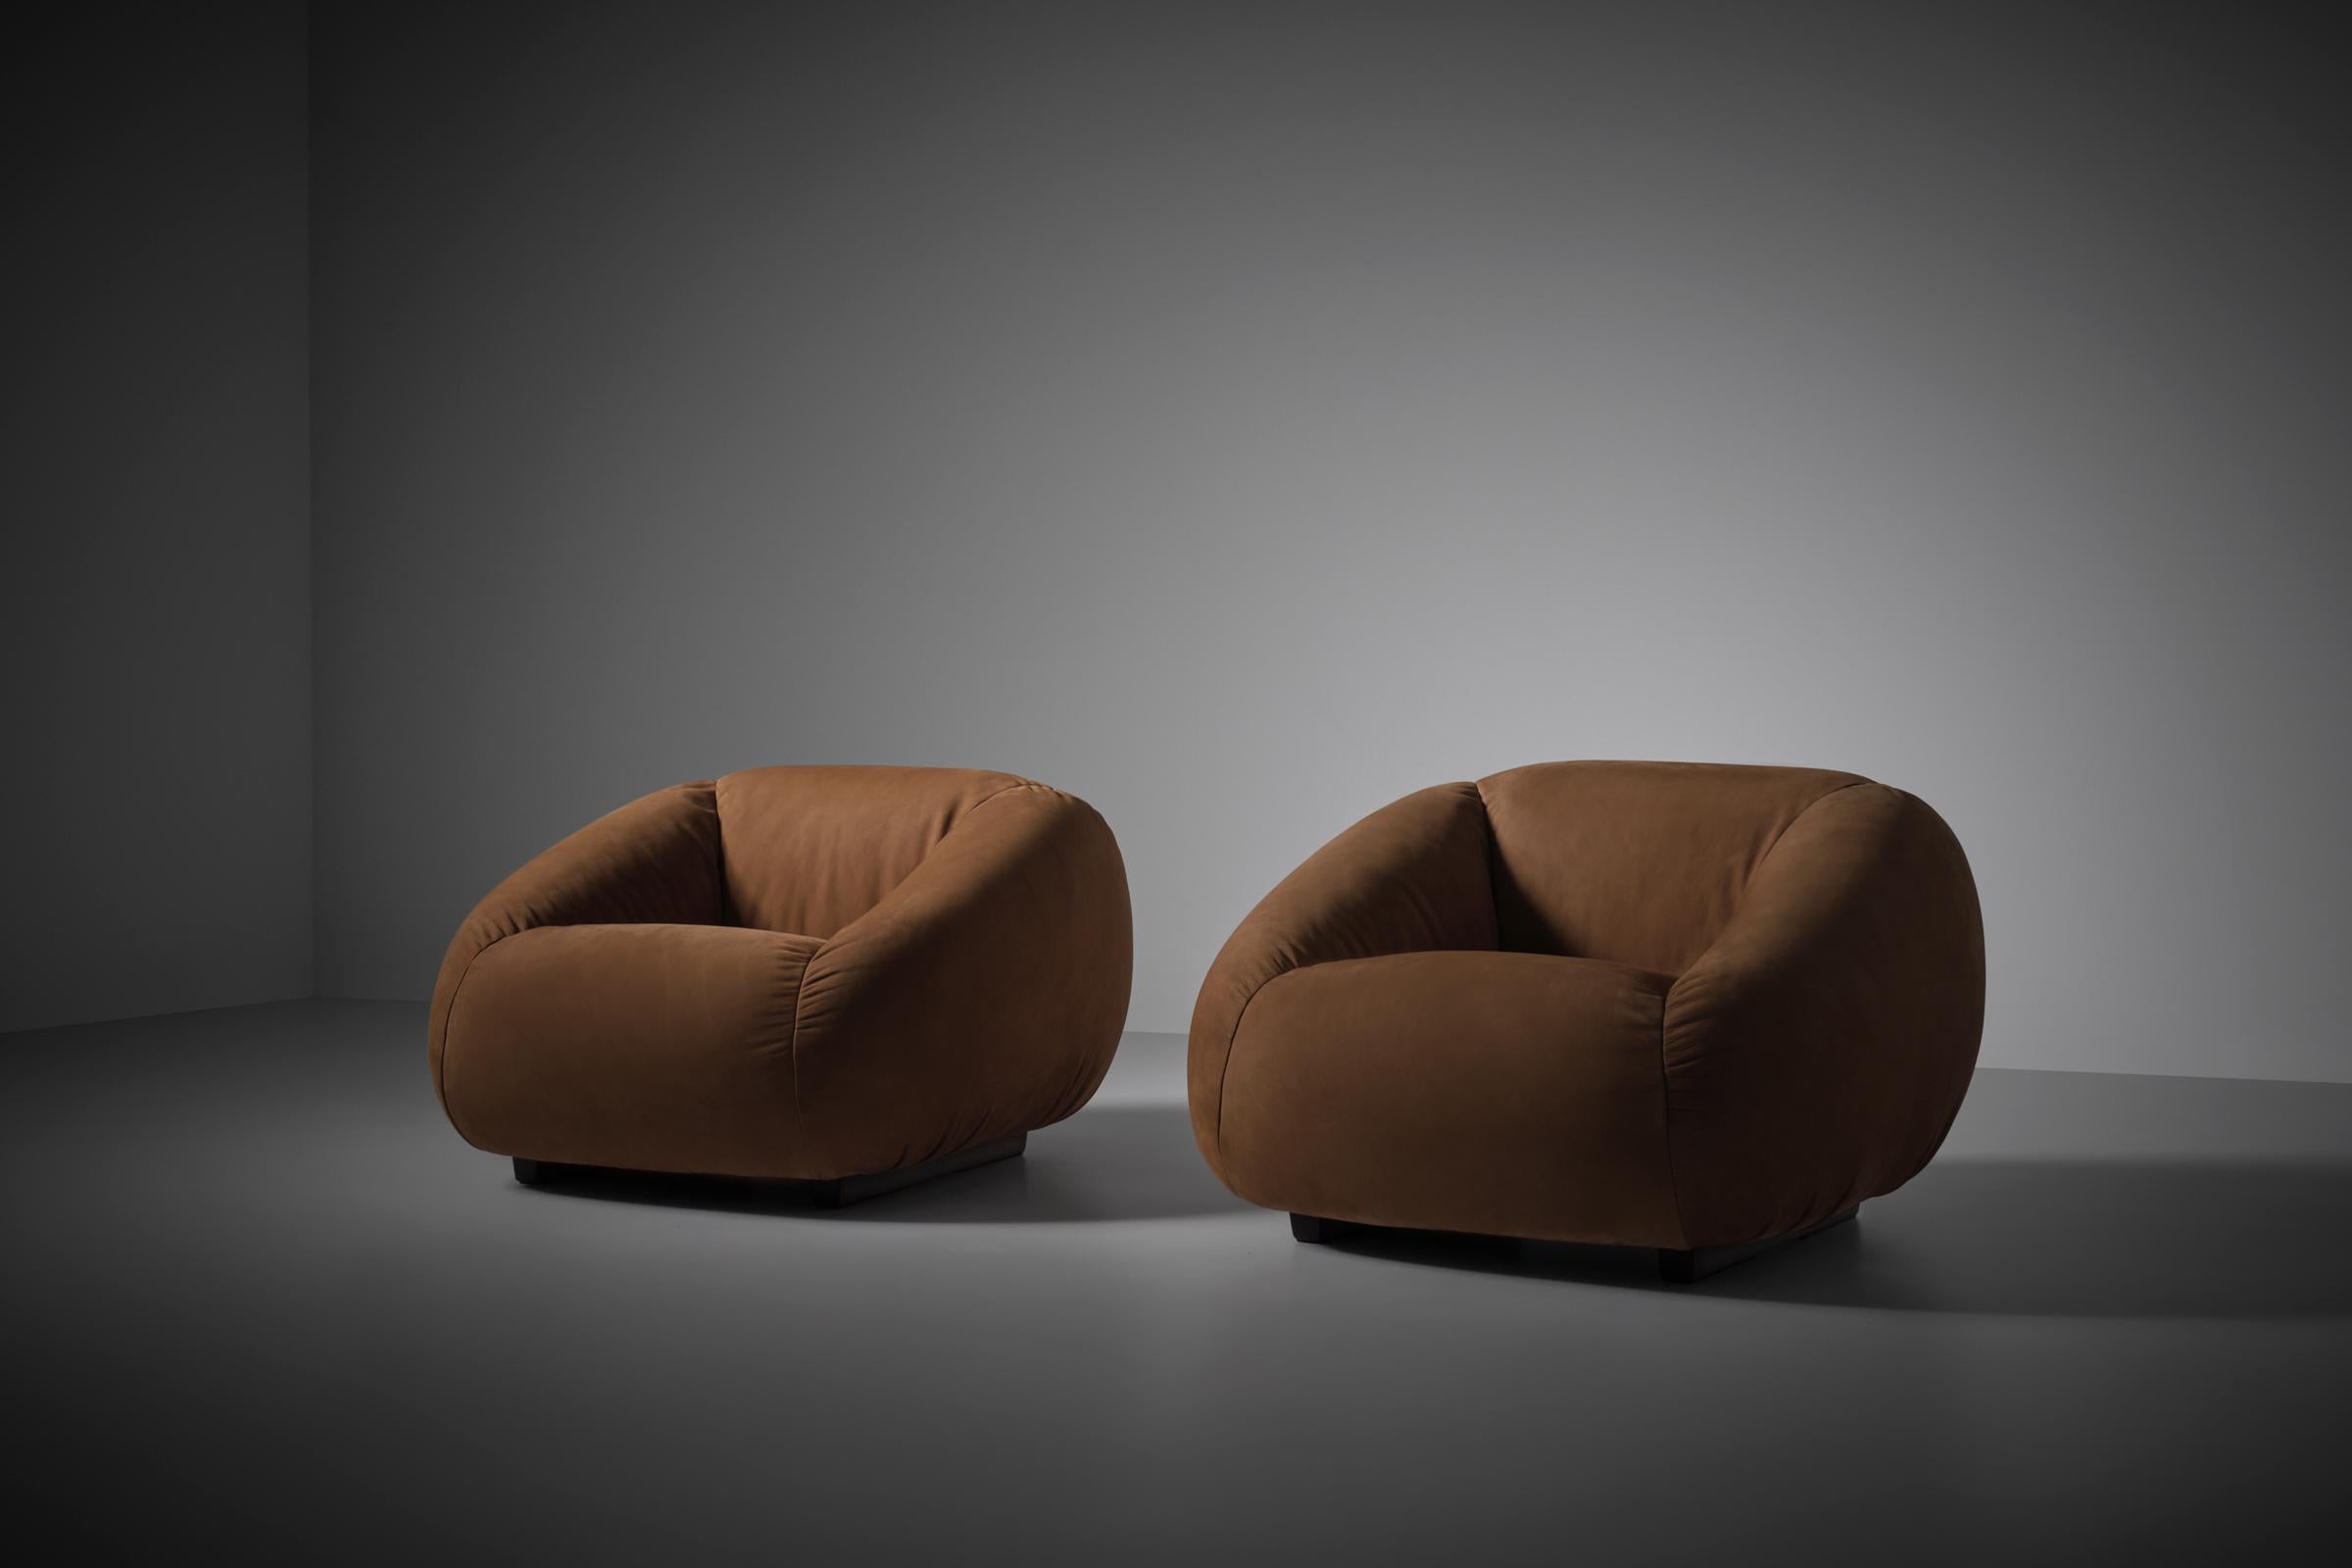 Geschwungene Lounge-Sessel aus Leder von Busnelli, Italien 1970er Jahre. Schönes, stark geschwungenes, voluminöses Design, gepolstert mit hochwertigem, dickem, cognacfarbenem Nubukleder, das den Stühlen eine schöne, lebendige Textur und eine